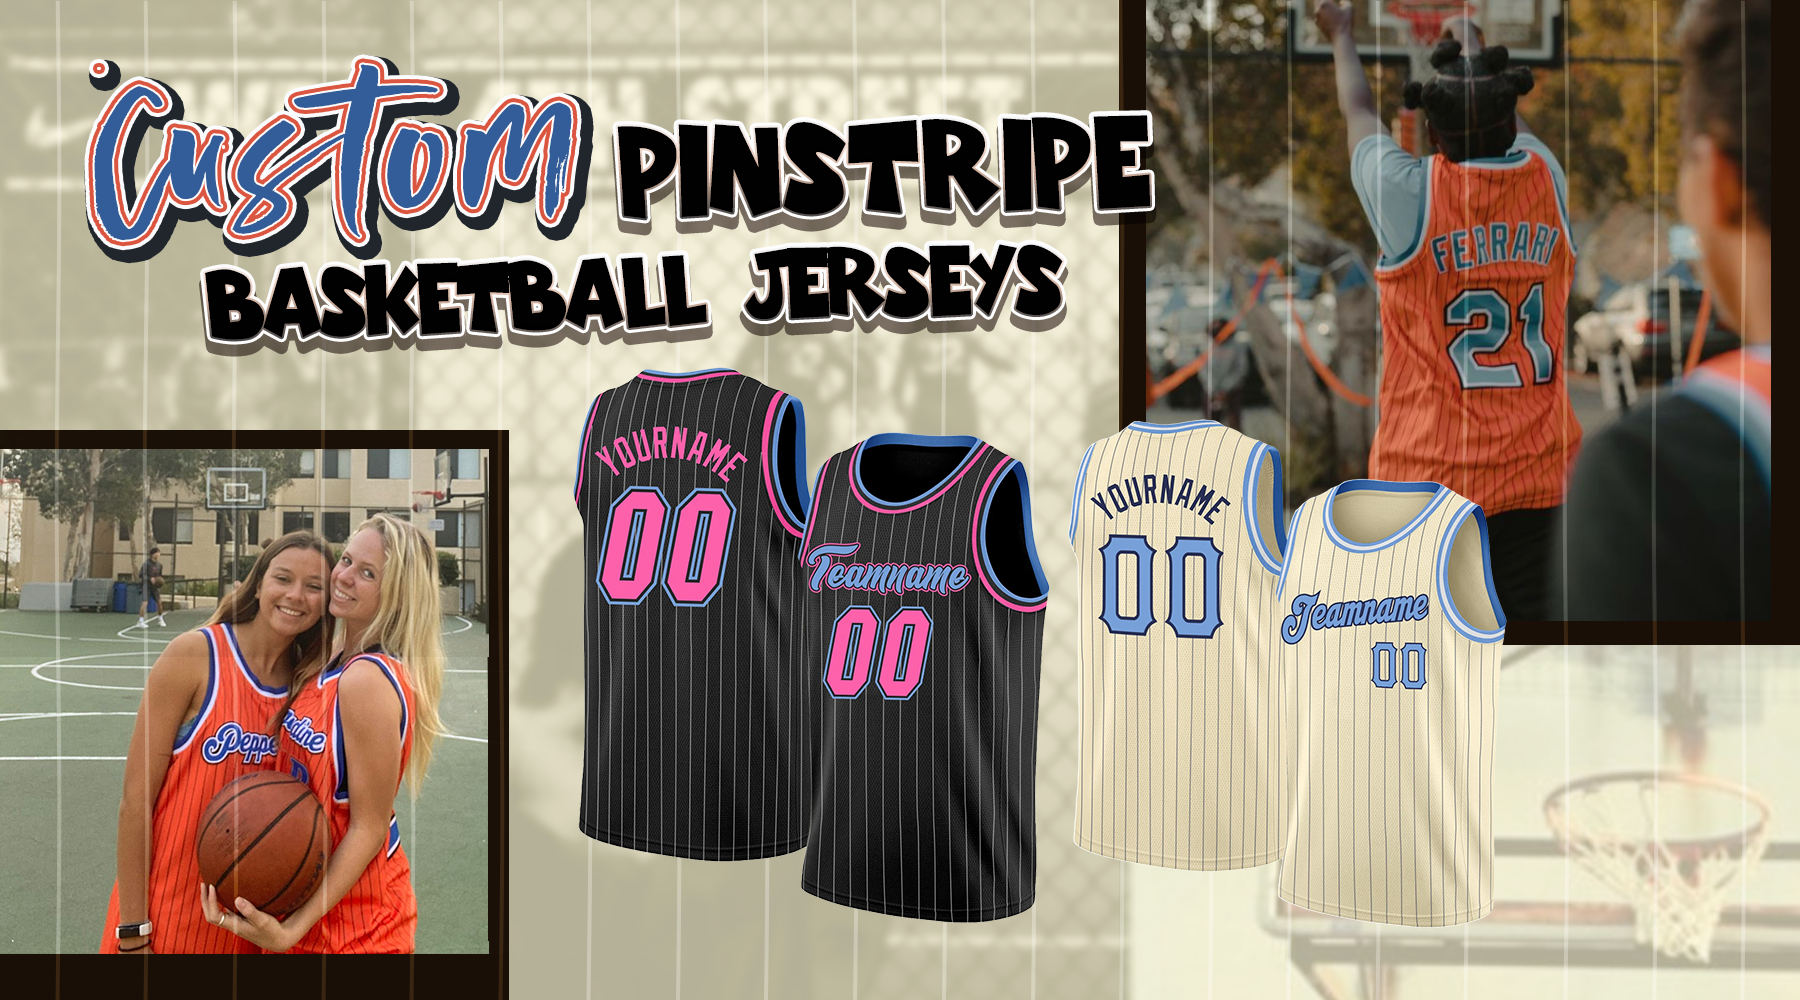 Best Seller Grizzlies Basketball Jersey Design  Nba jersey outfit, Jersey  design, Basketball uniforms design